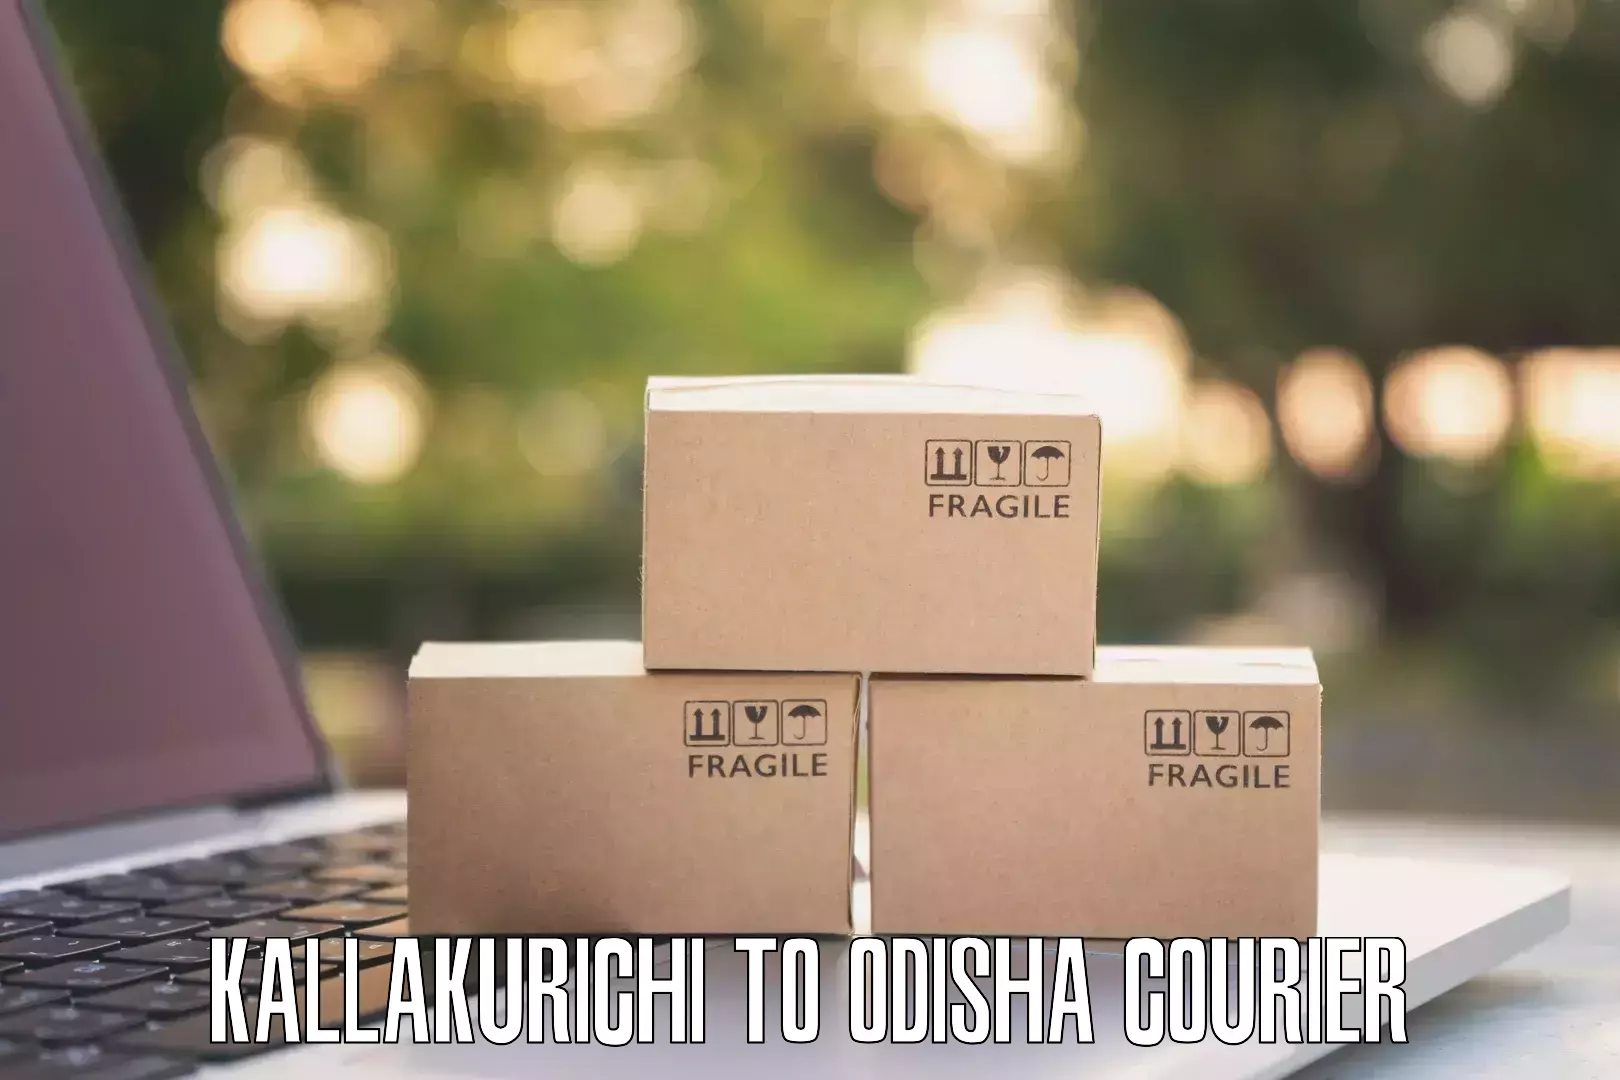 24/7 courier service Kallakurichi to Athagarh